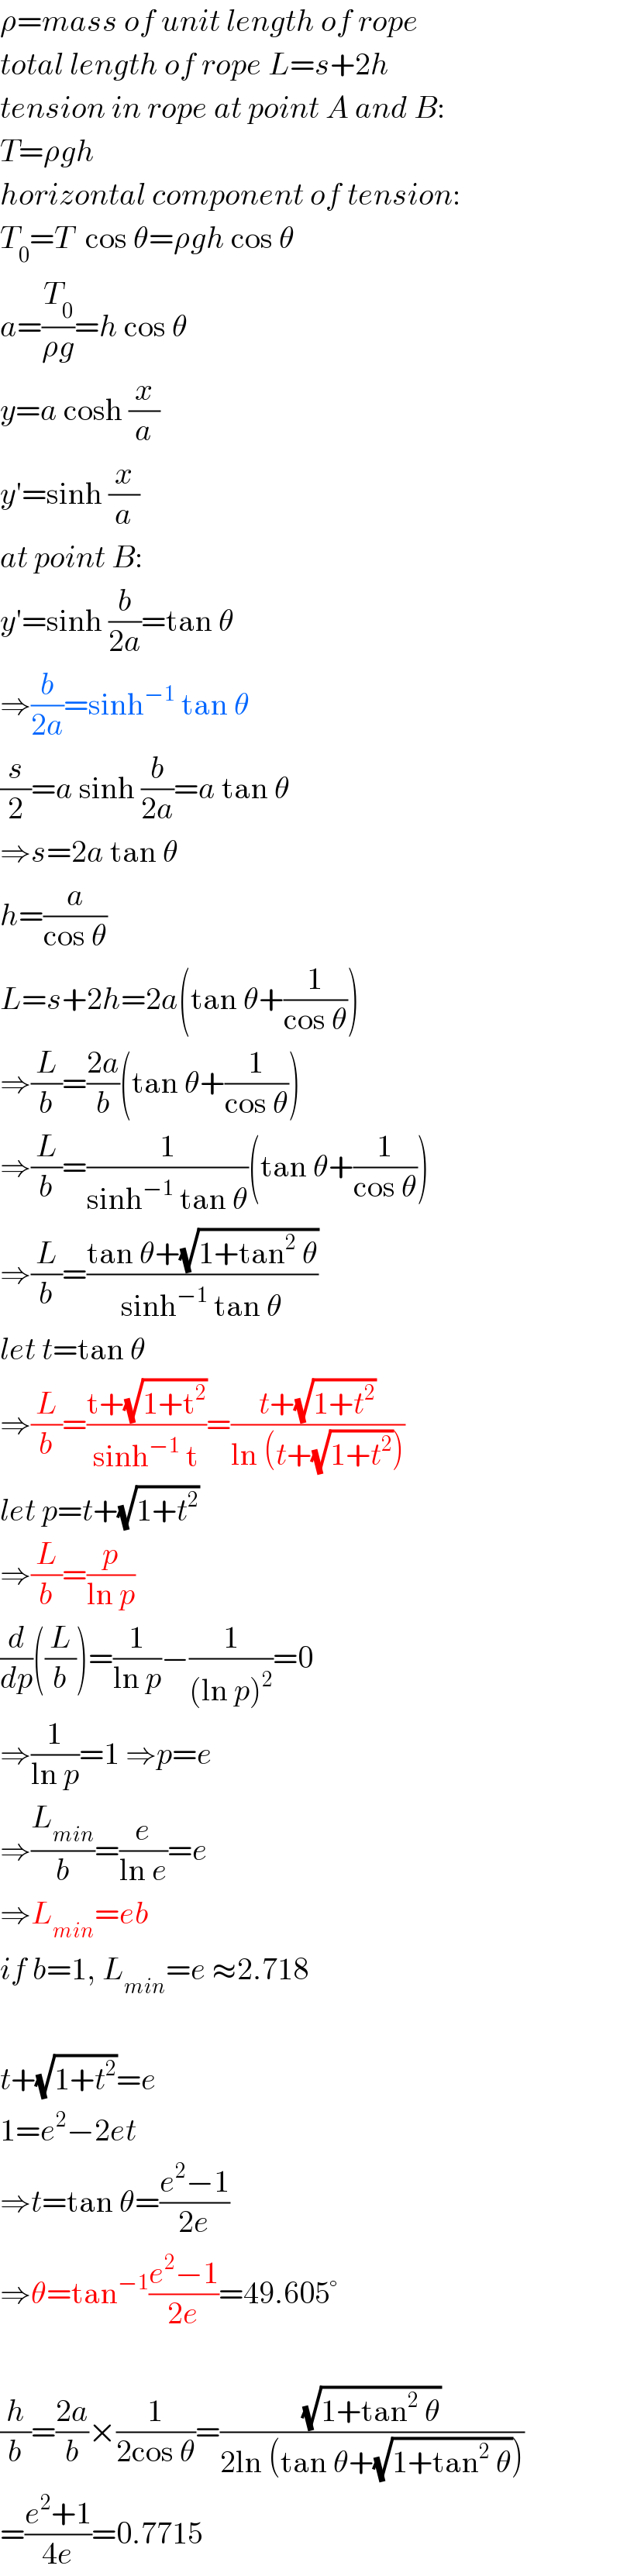 ρ=mass of unit length of rope  total length of rope L=s+2h  tension in rope at point A and B:  T=ρgh  horizontal component of tension:  T_0 =T  cos θ=ρgh cos θ  a=(T_0 /(ρg))=h cos θ  y=a cosh (x/a)  y′=sinh (x/a)  at point B:  y′=sinh (b/(2a))=tan θ  ⇒(b/(2a))=sinh^(−1)  tan θ  (s/2)=a sinh (b/(2a))=a tan θ  ⇒s=2a tan θ  h=(a/(cos θ))  L=s+2h=2a(tan θ+(1/(cos θ)))  ⇒(L/b)=((2a)/b)(tan θ+(1/(cos θ)))  ⇒(L/b)=(1/(sinh^(−1)  tan θ))(tan θ+(1/(cos θ)))  ⇒(L/b)=((tan θ+(√(1+tan^2  θ)))/(sinh^(−1)  tan θ))  let t=tan θ  ⇒(L/b)=((t+(√(1+t^2 )))/(sinh^(−1)  t))=((t+(√(1+t^2 )))/(ln (t+(√(1+t^2 )))))  let p=t+(√(1+t^2 ))  ⇒(L/b)=(p/(ln p))  (d/dp)((L/b))=(1/(ln p))−(1/((ln p)^2 ))=0  ⇒(1/(ln p))=1 ⇒p=e  ⇒(L_(min) /b)=(e/(ln e))=e  ⇒L_(min) =eb  if b=1, L_(min) =e ≈2.718    t+(√(1+t^2 ))=e  1=e^2 −2et  ⇒t=tan θ=((e^2 −1)/(2e))  ⇒θ=tan^(−1) ((e^2 −1)/(2e))=49.605°    (h/b)=((2a)/b)×(1/(2cos θ))=((√(1+tan^2  θ))/(2ln (tan θ+(√(1+tan^2  θ)))))  =((e^2 +1)/(4e))=0.7715  